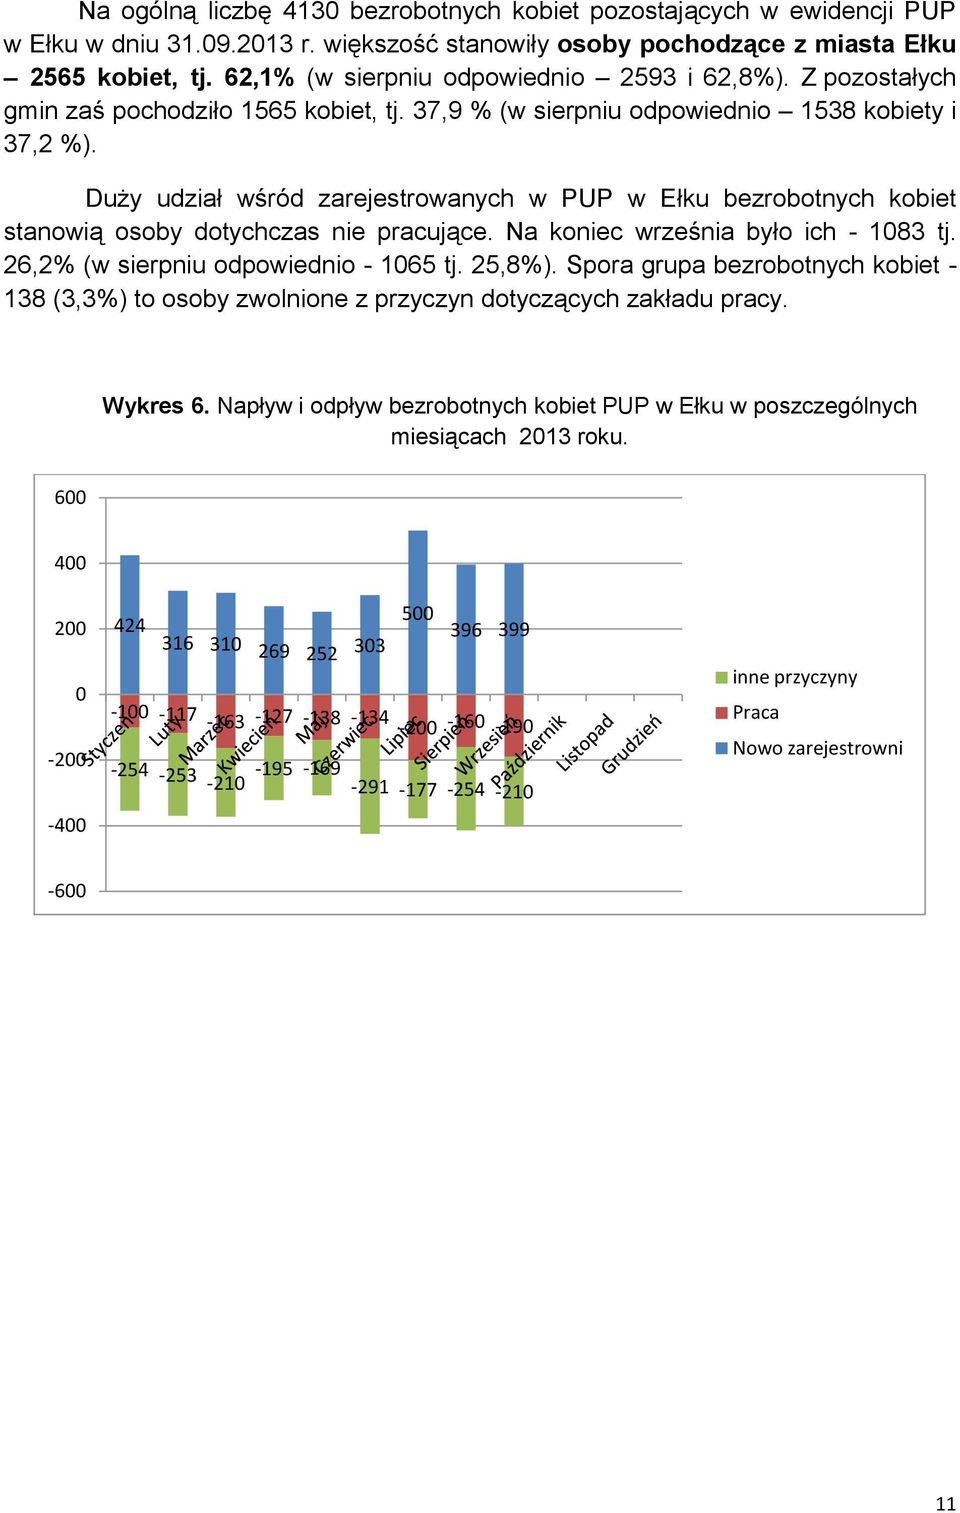 Duży udział wśród zarejestrowanych w PUP w Ełku bezrobotnych kobiet stanowią osoby dotychczas nie pracujące. Na koniec września było ich - 83 tj. 26,2% (w sierpniu odpowiednio - 65 tj. 25,8%).